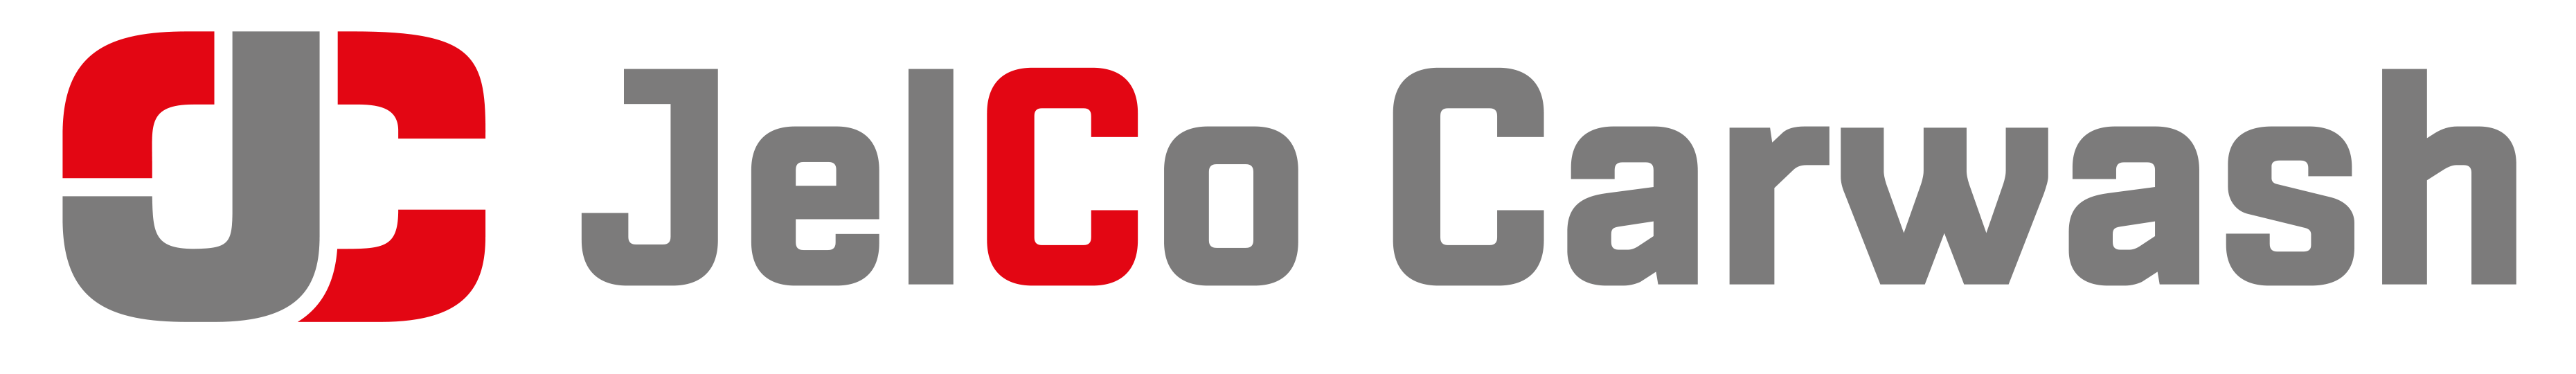 Jelco Carwash logo liggend